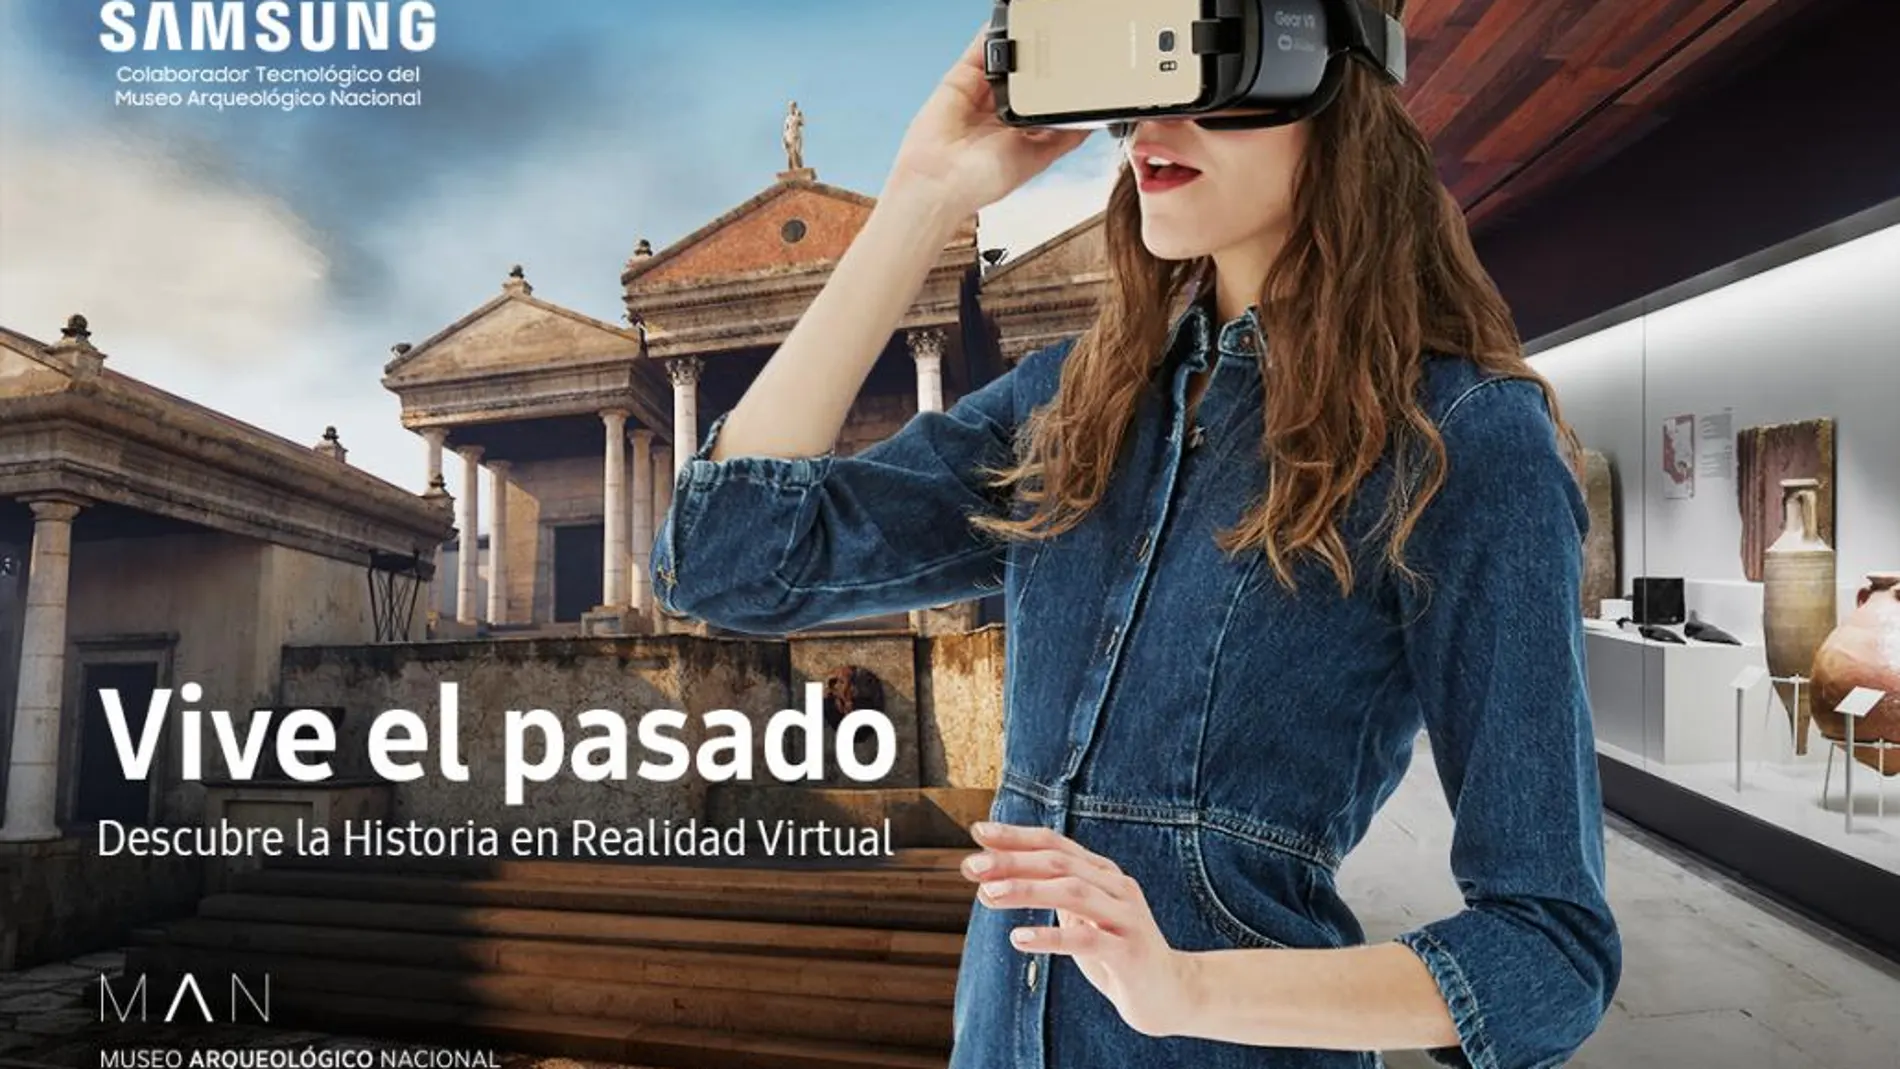 La realidad virtual cambiará la forma de ver los museos